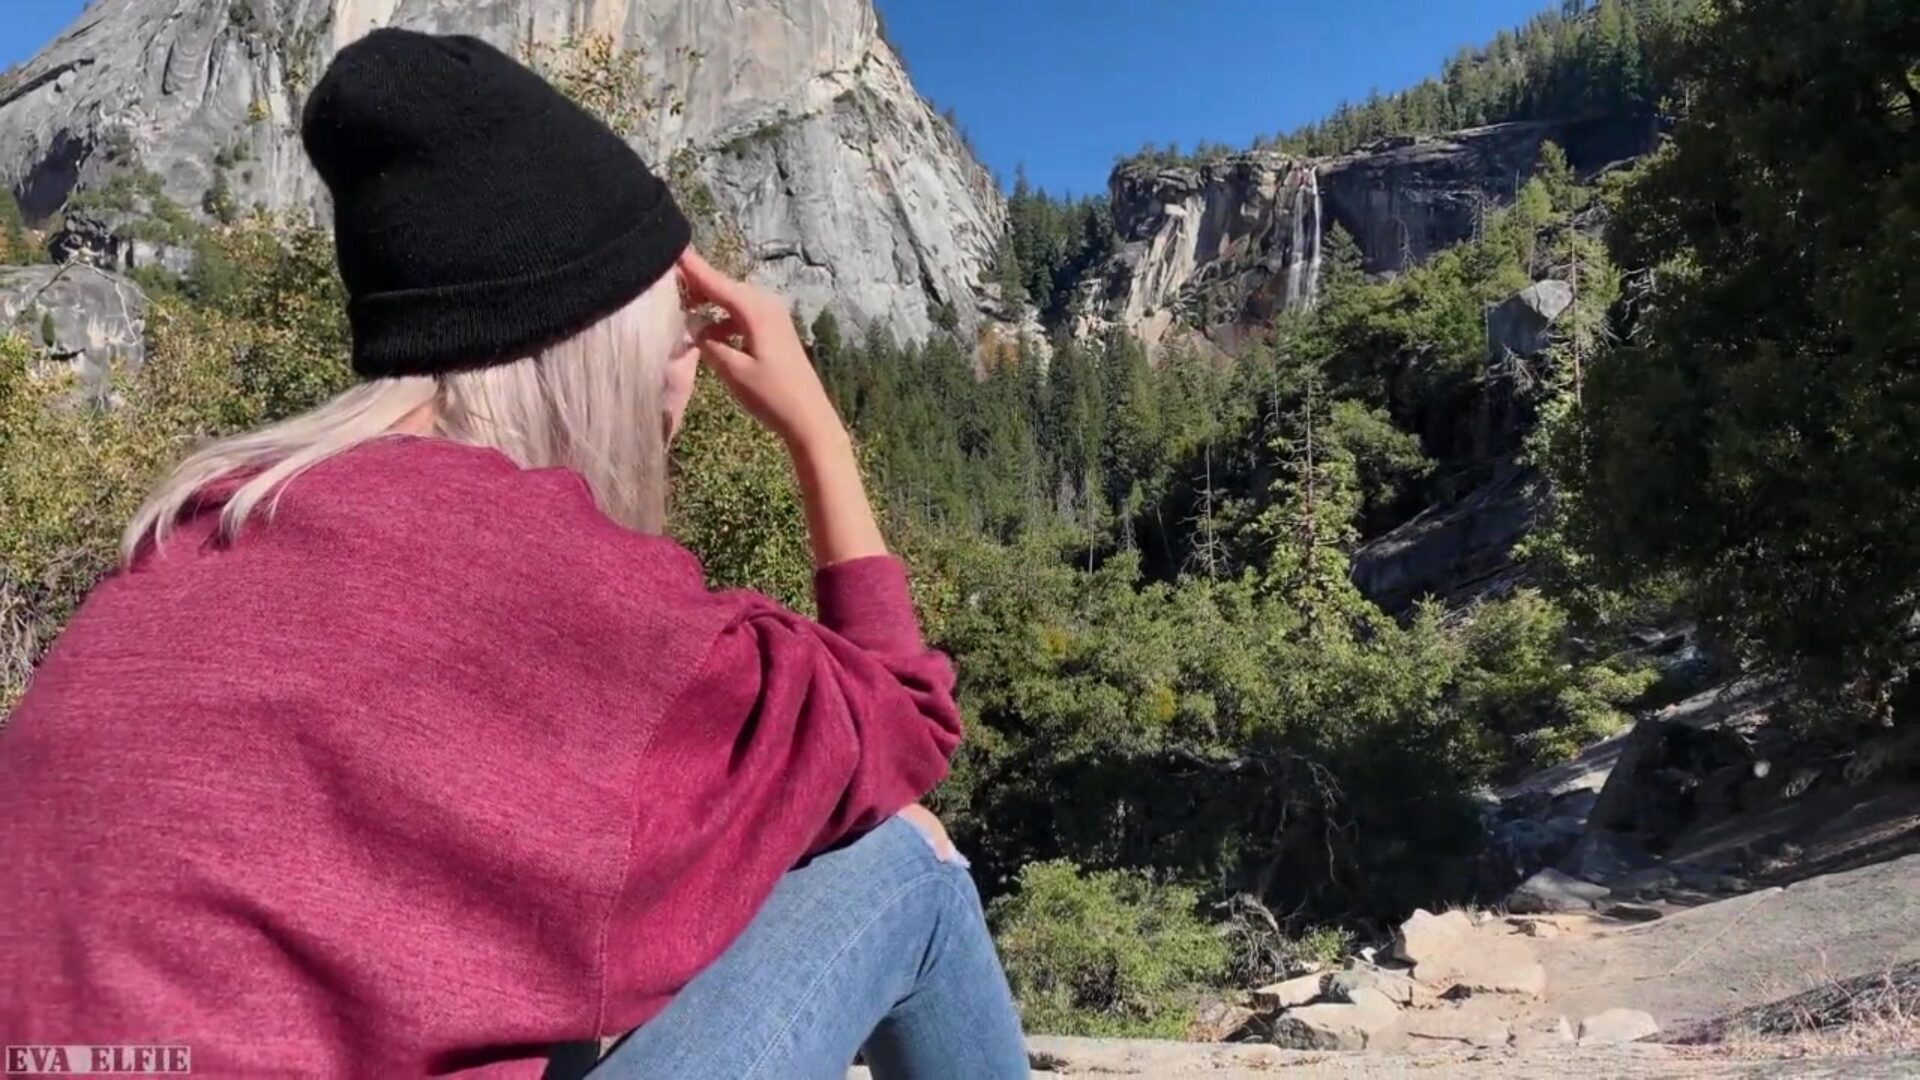 Caminata en Yosemite termina con una mamada pública de una linda adolescente - Eva Elfie